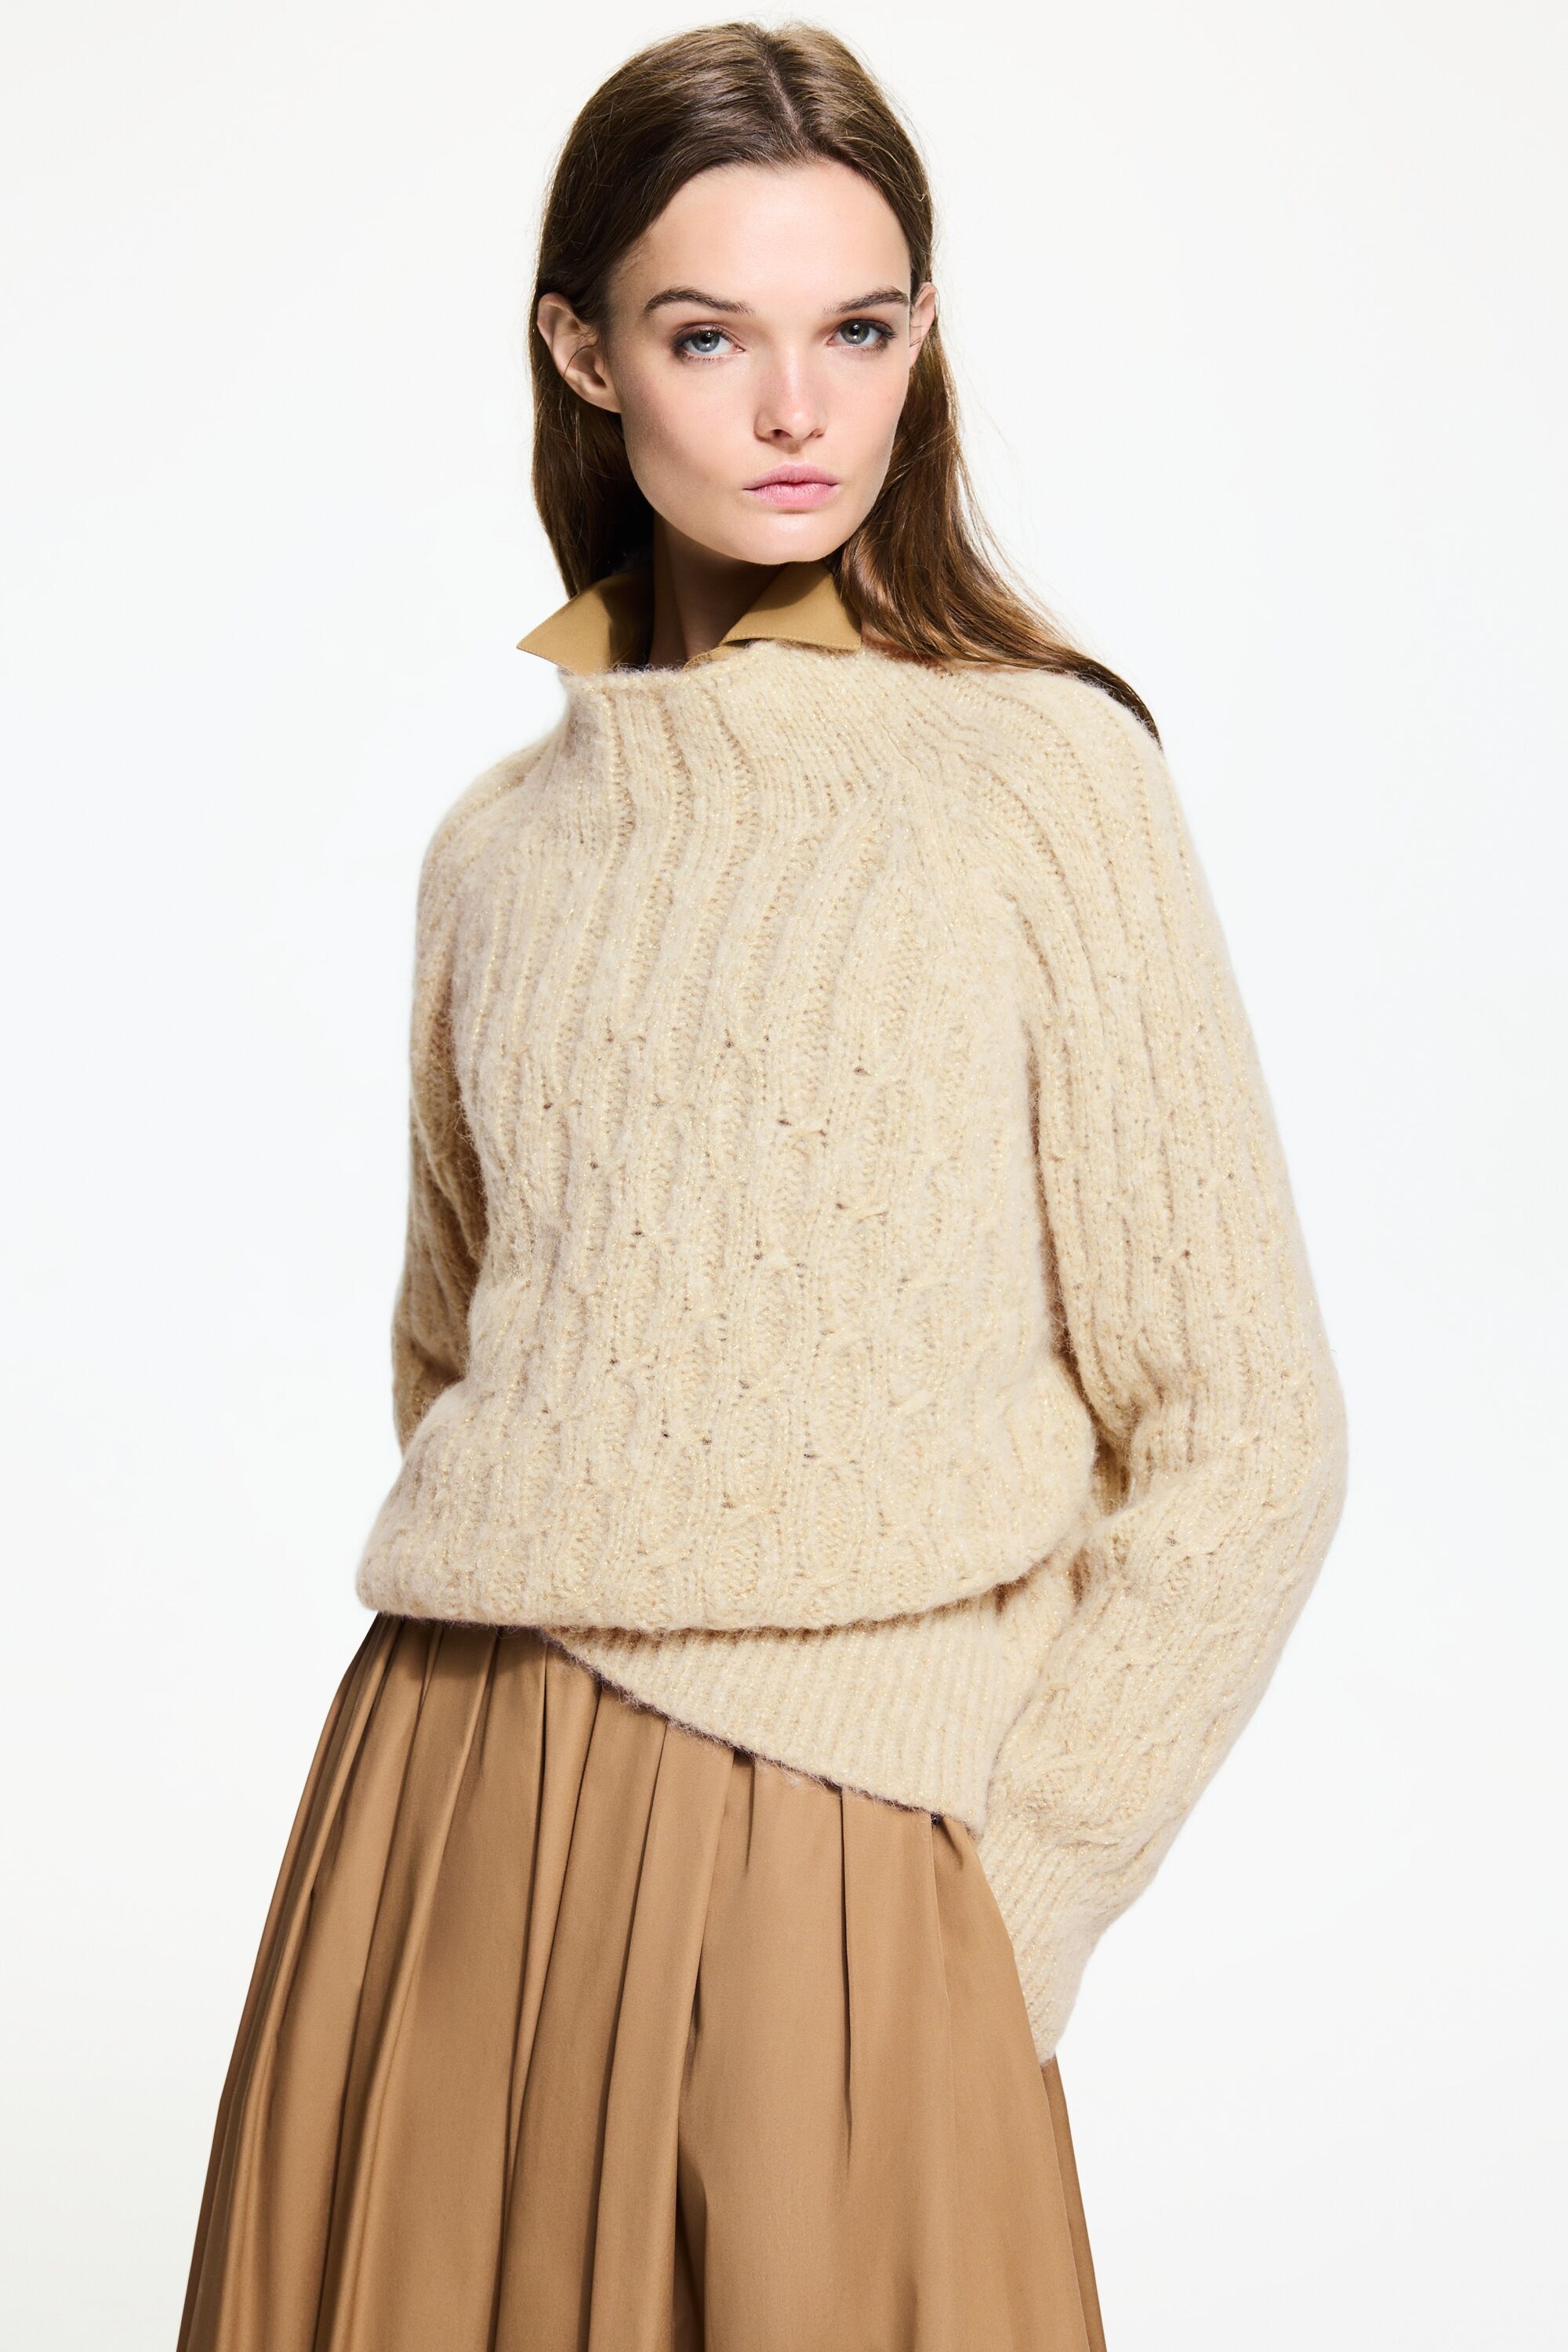 Alpaca and merino wool sweater